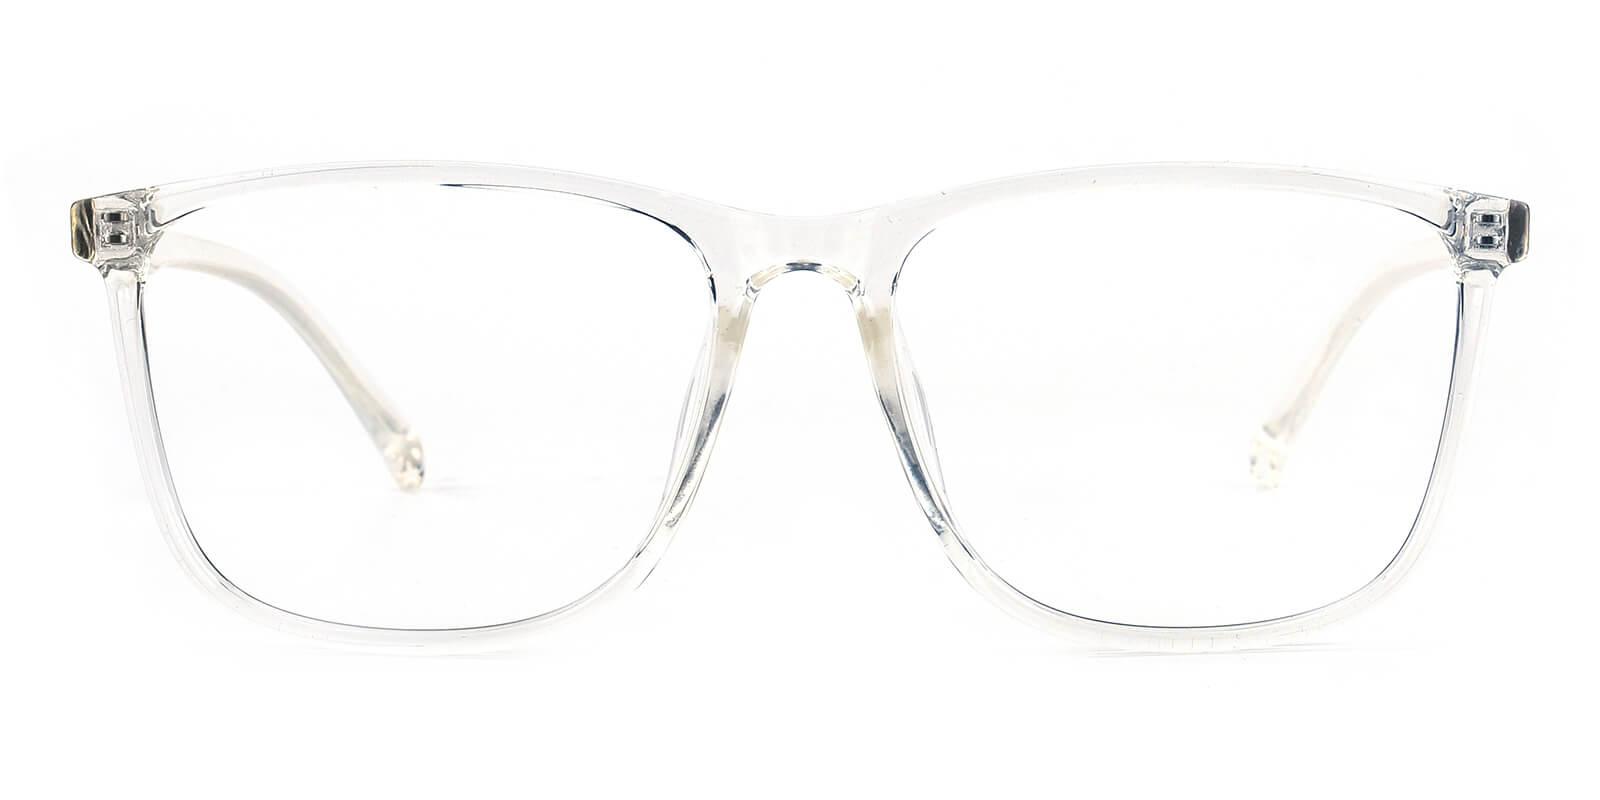 Poise-Translucent-Rectangle-TR-Eyeglasses-detail